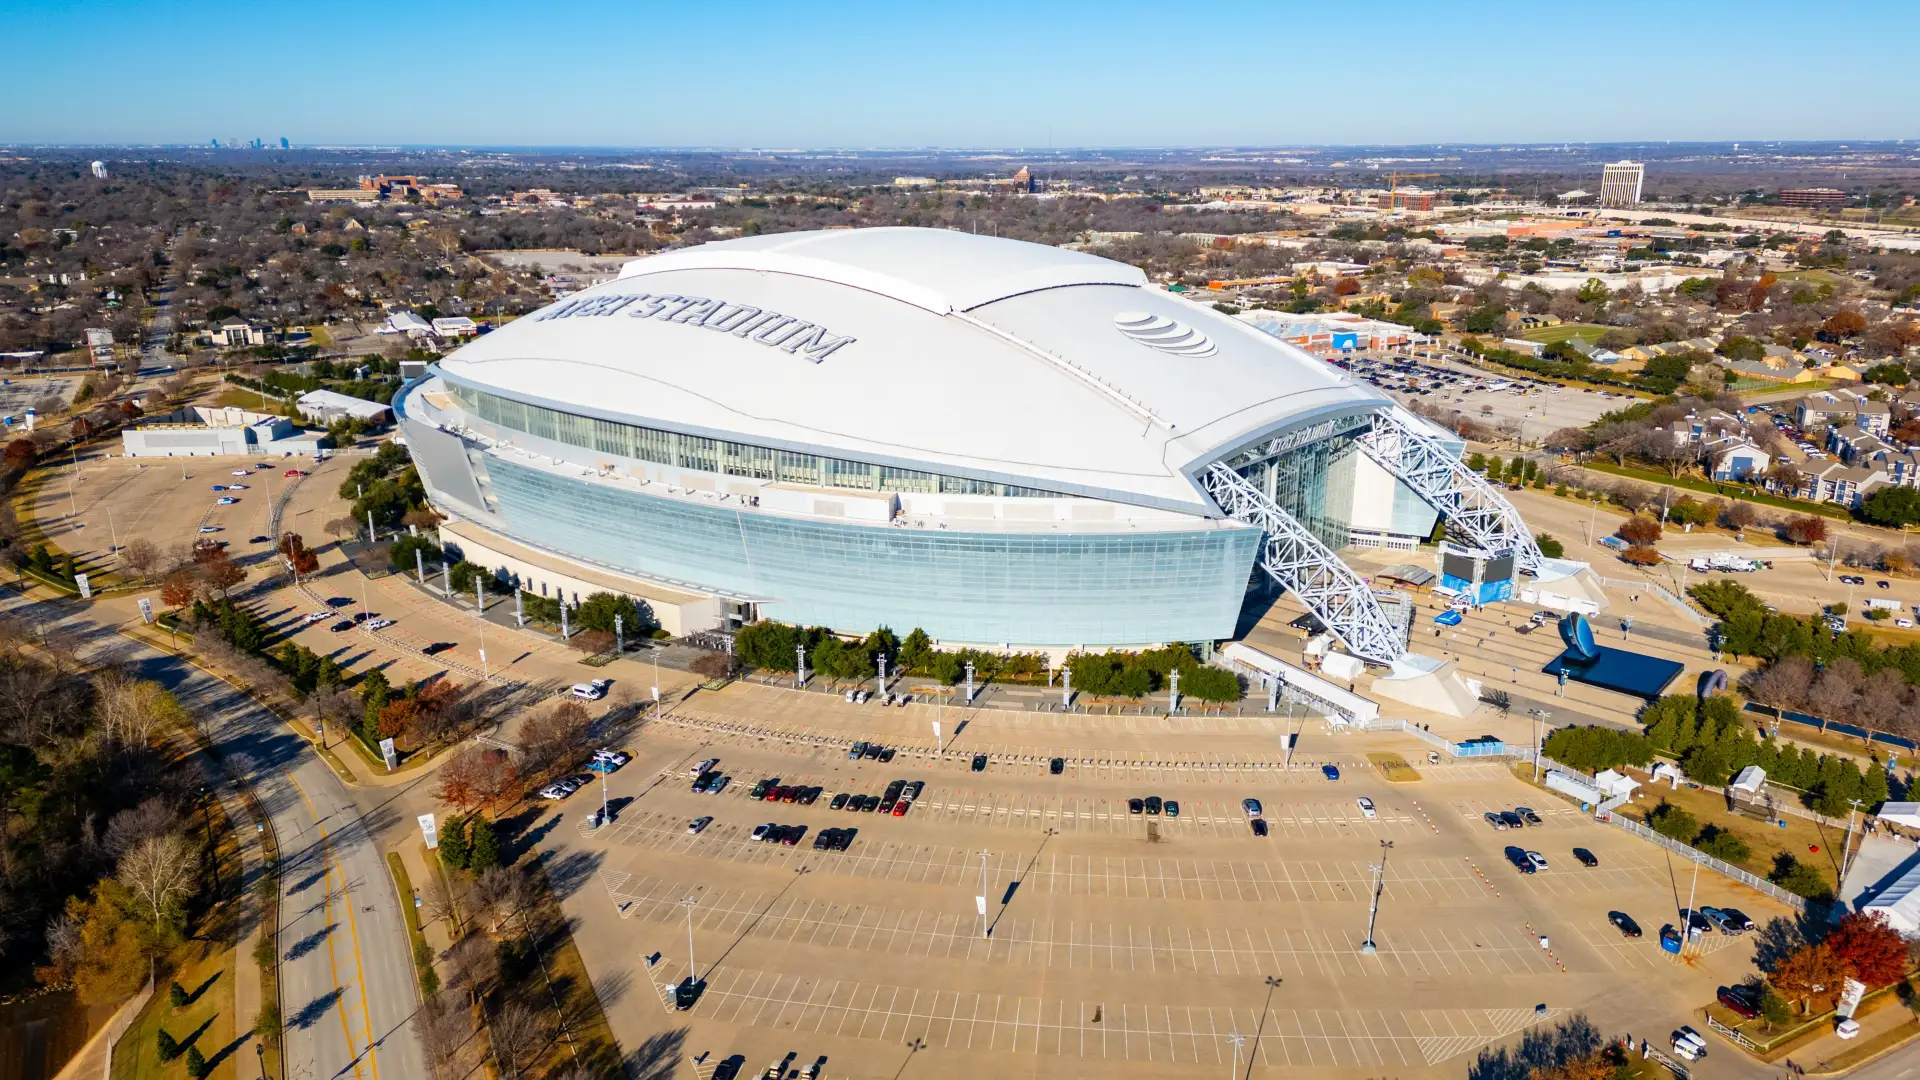 The AT&T Stadium in Dallas, Texas